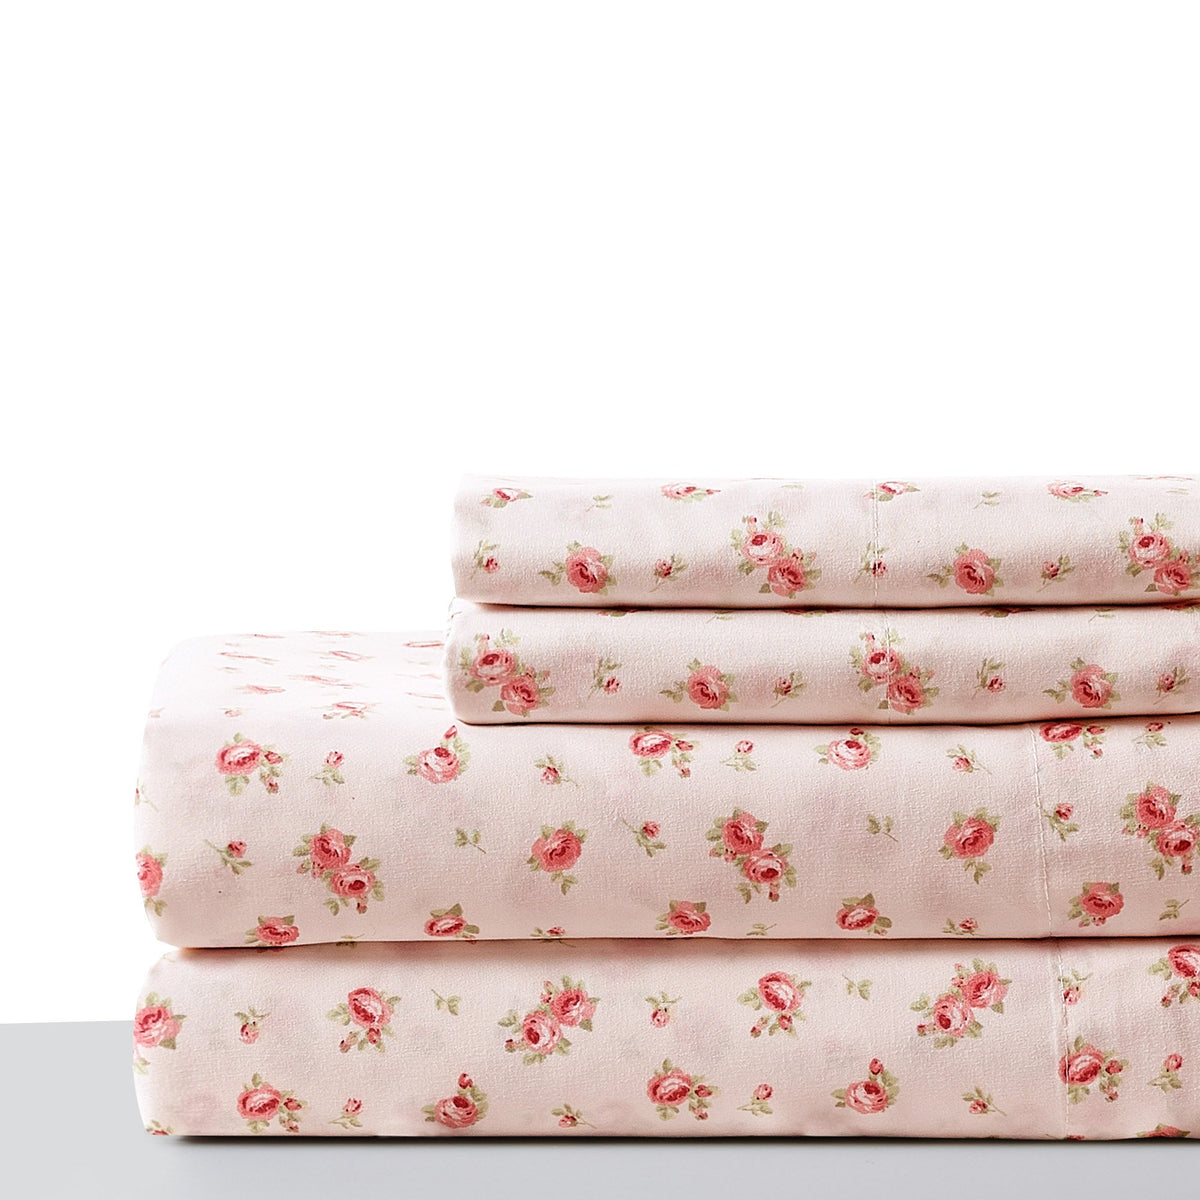 Melun 4 Piece Queen Size Rose Pattern Sheet Set , Pink - BM202116